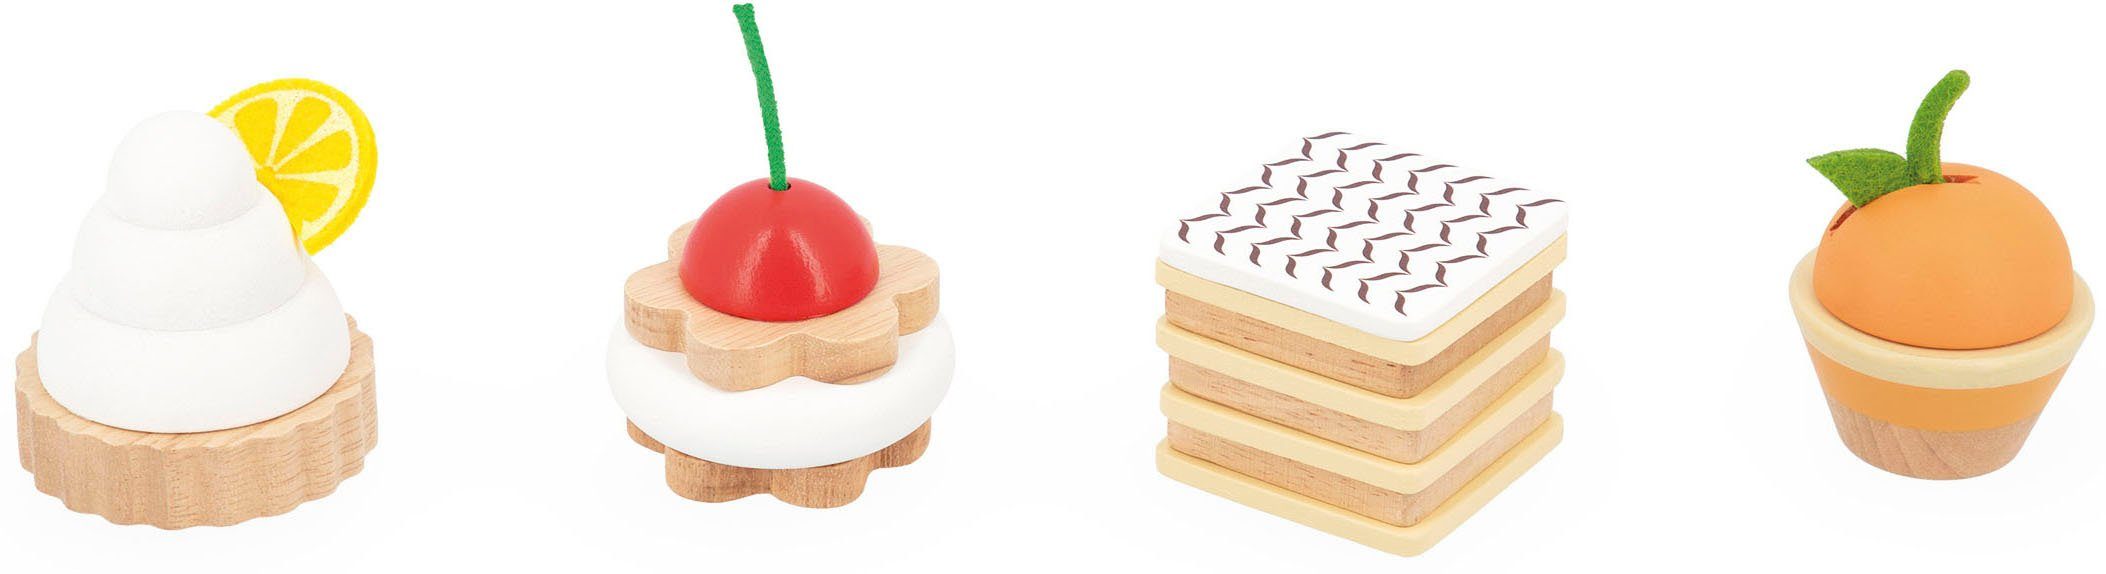 Janod Spiellebensmittel Holzspielzeug, Konditorei-Gebäckstücke Twist, aus Holz